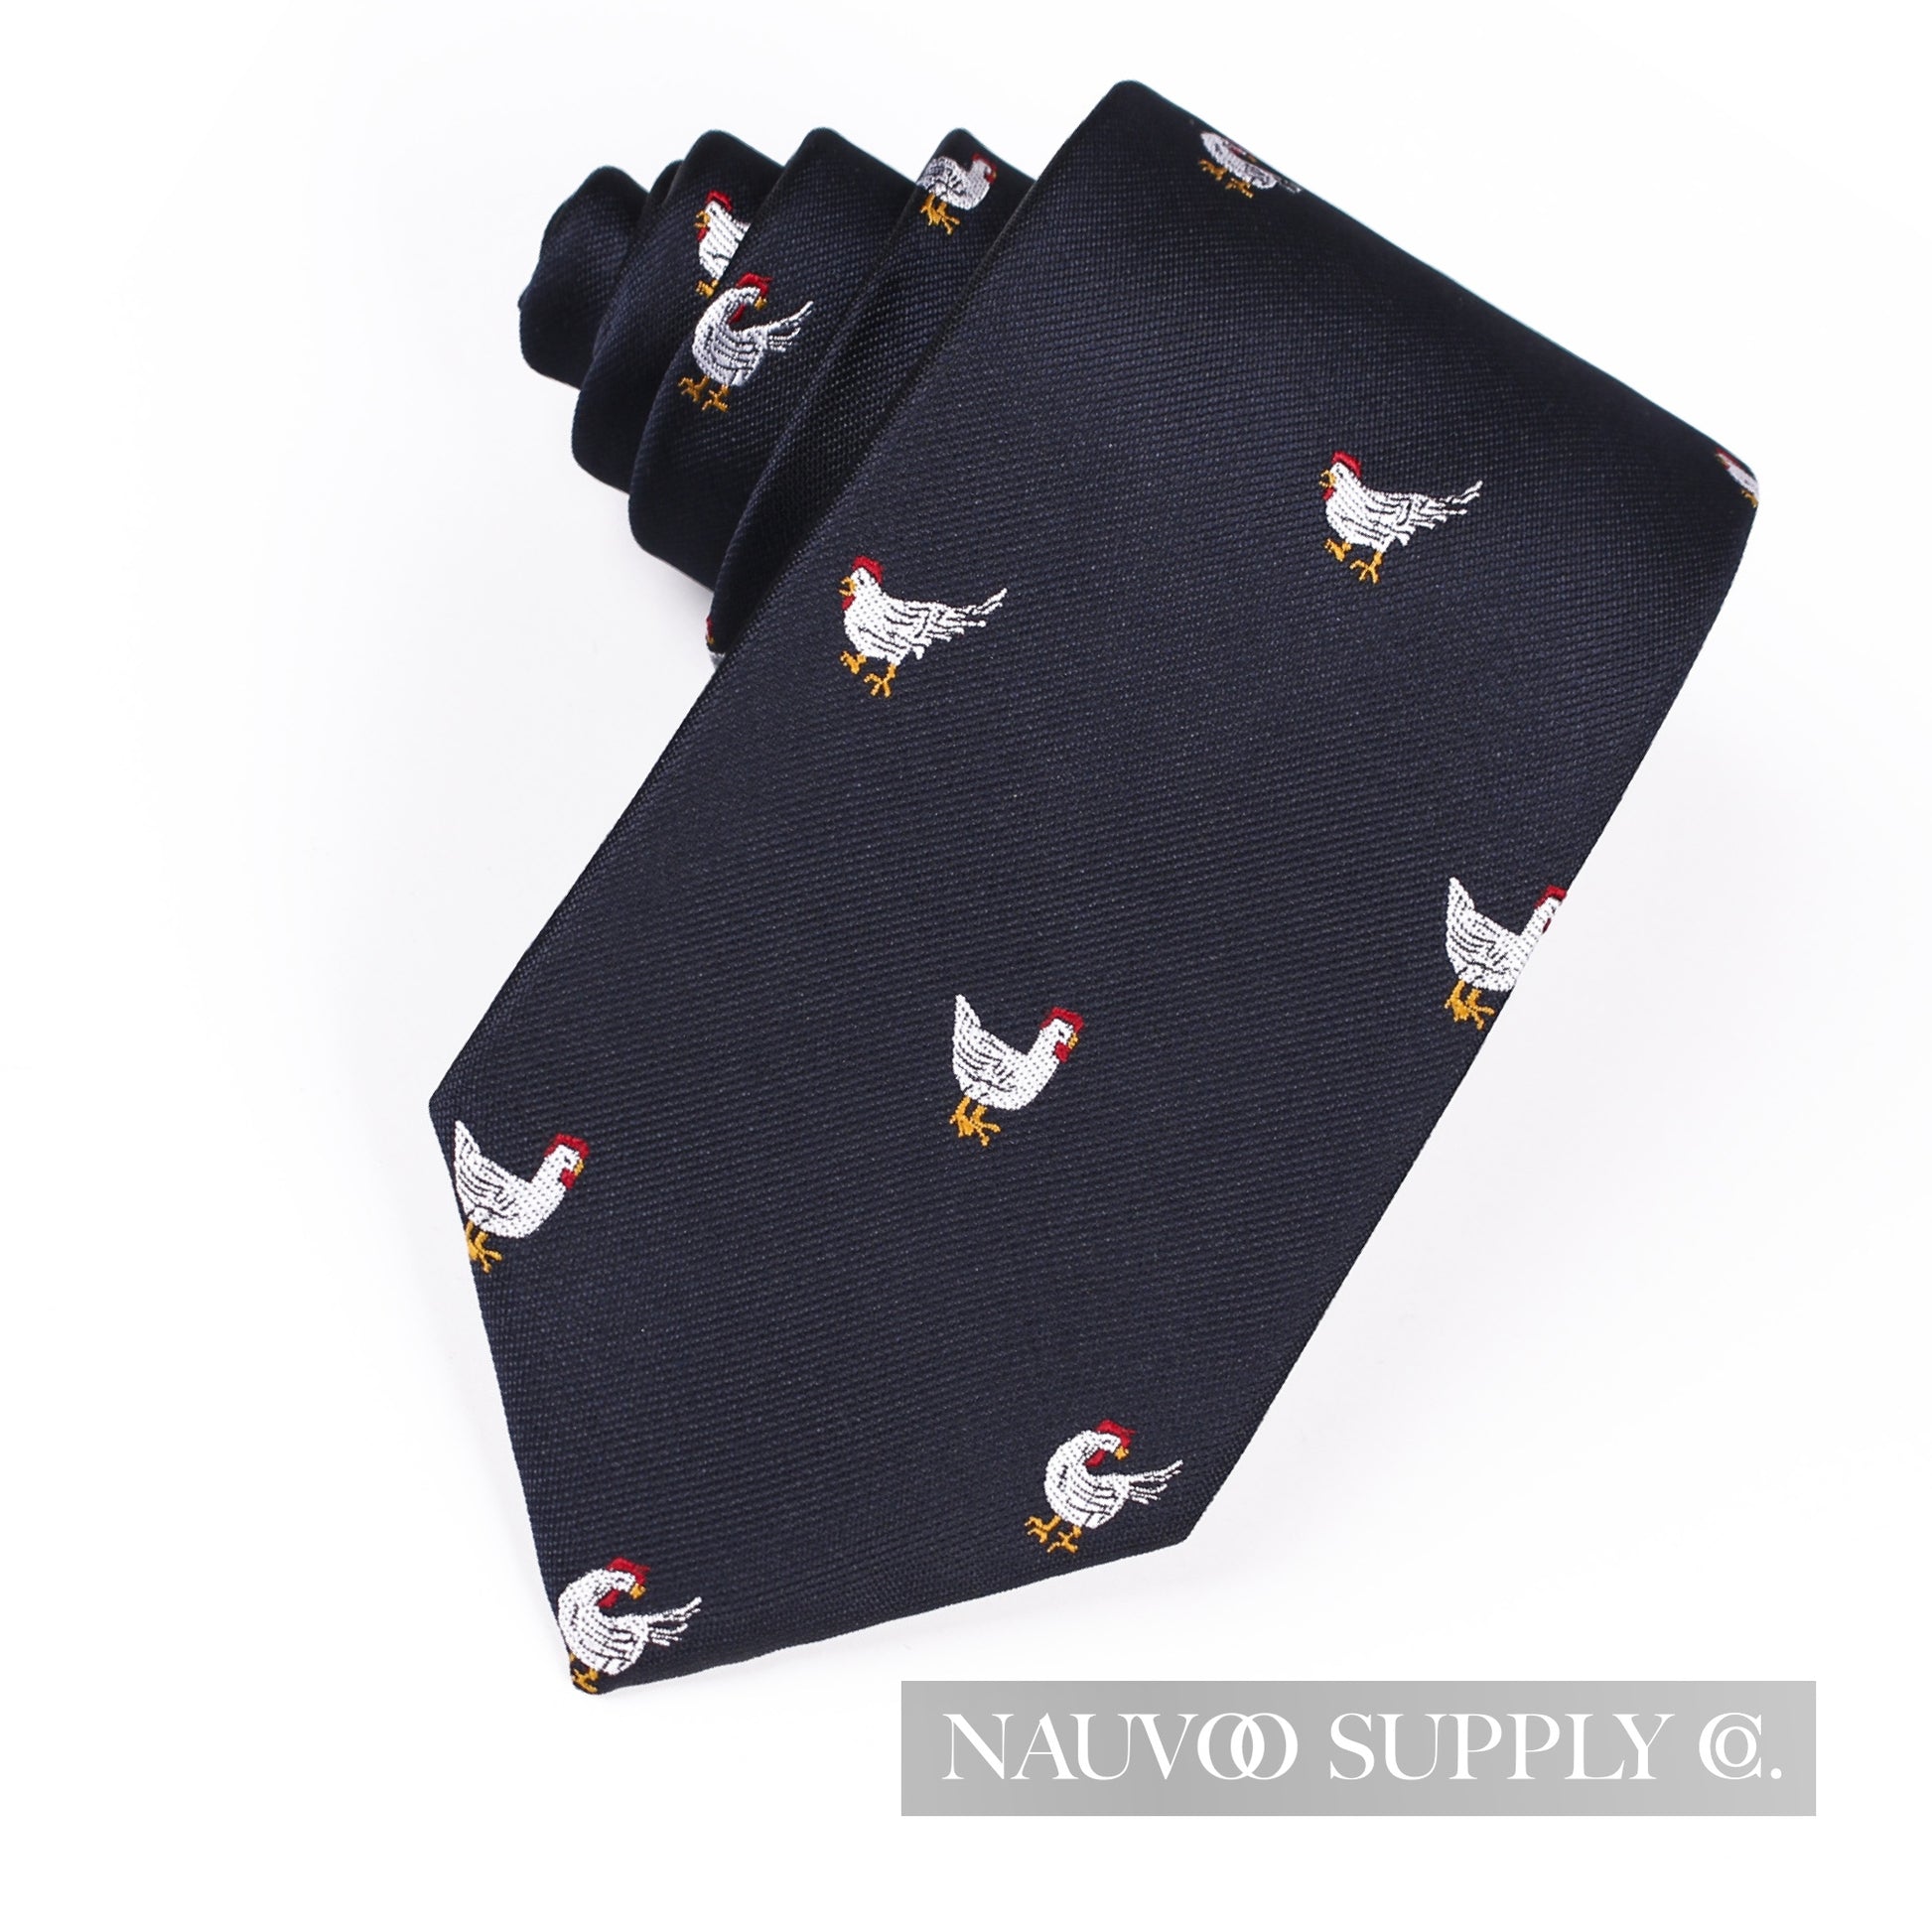 Homesteader necktie - Nauvoo Supply 